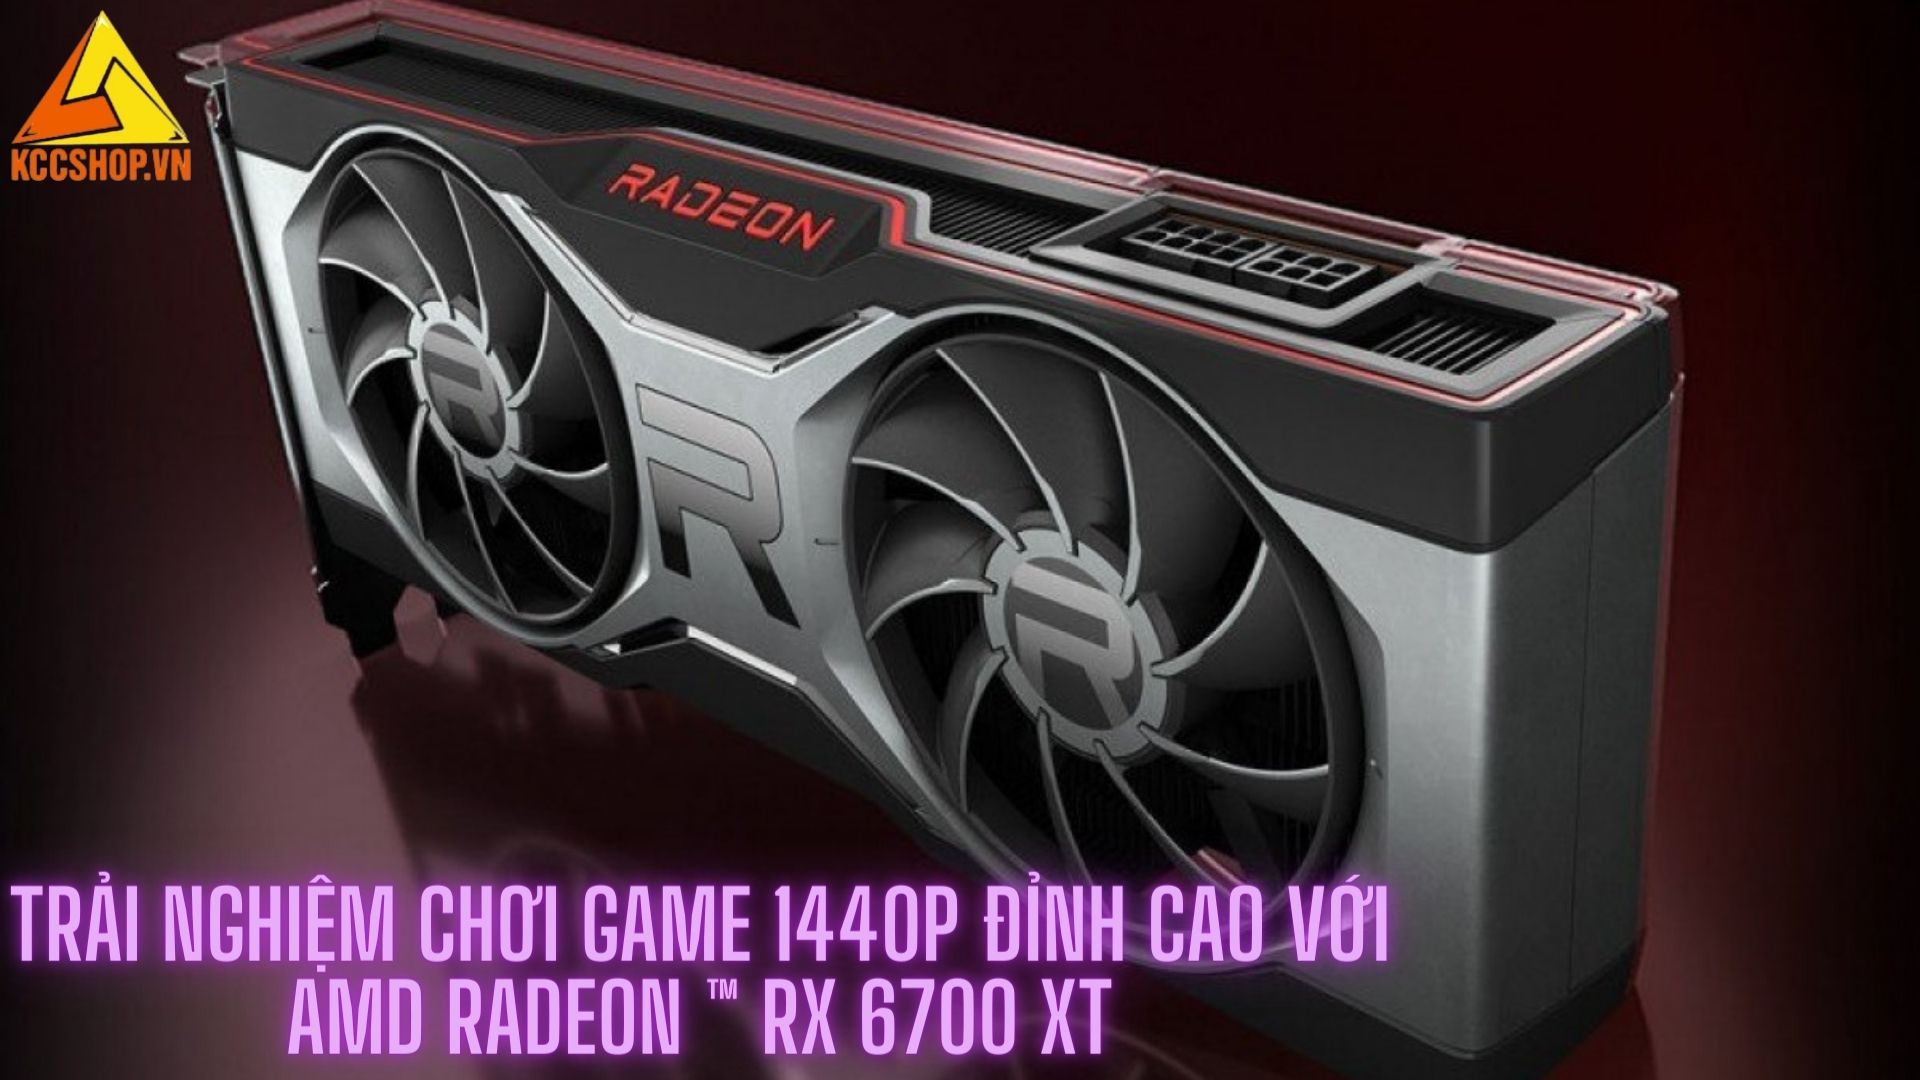 Trải nghiệm chơi game 1440p đỉnh cao với AMD Radeon ™ RX 6700 XT